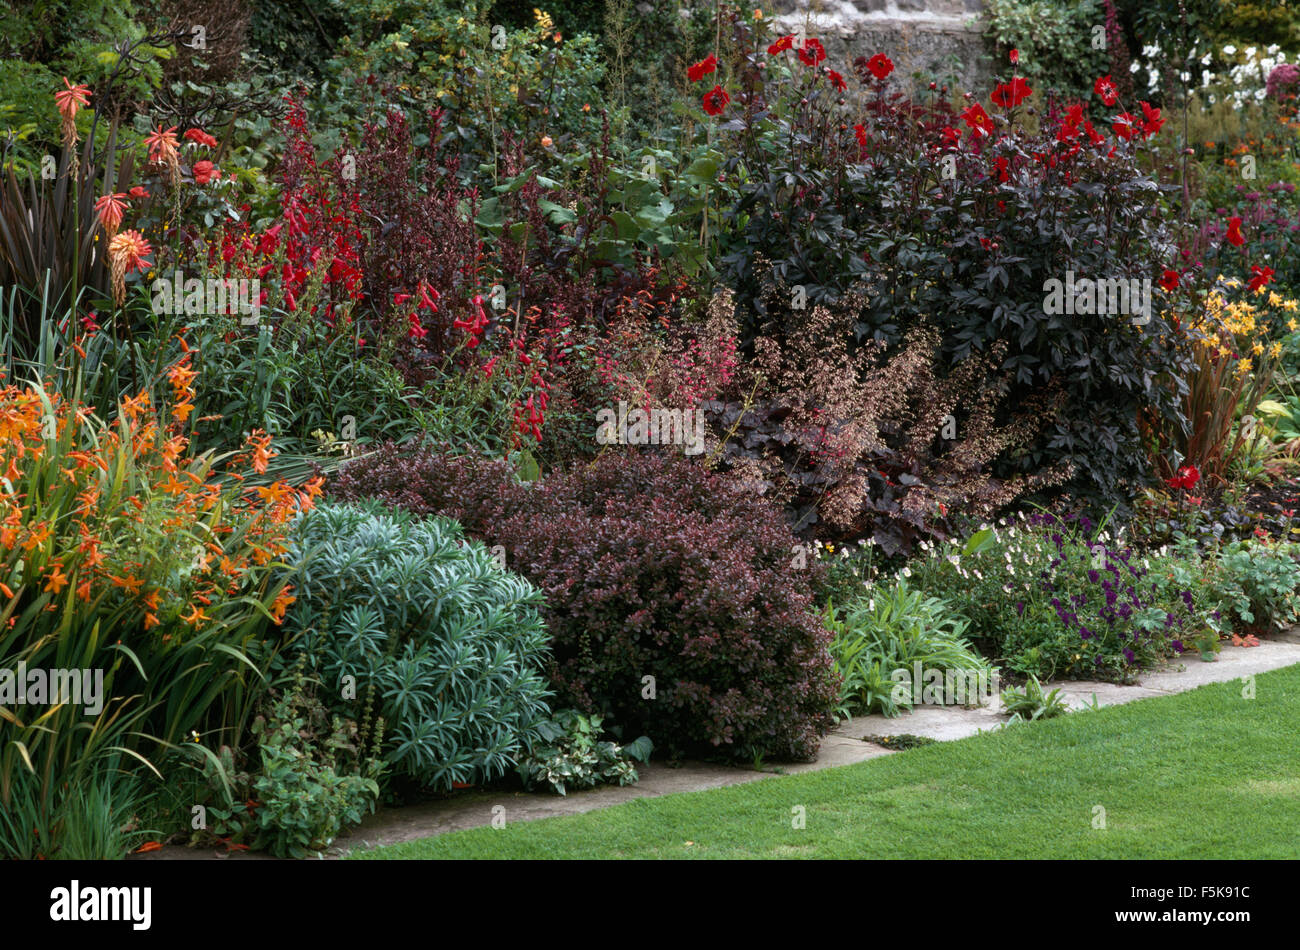 Arbusti rossi Immagini e Fotos Stock - Alamy